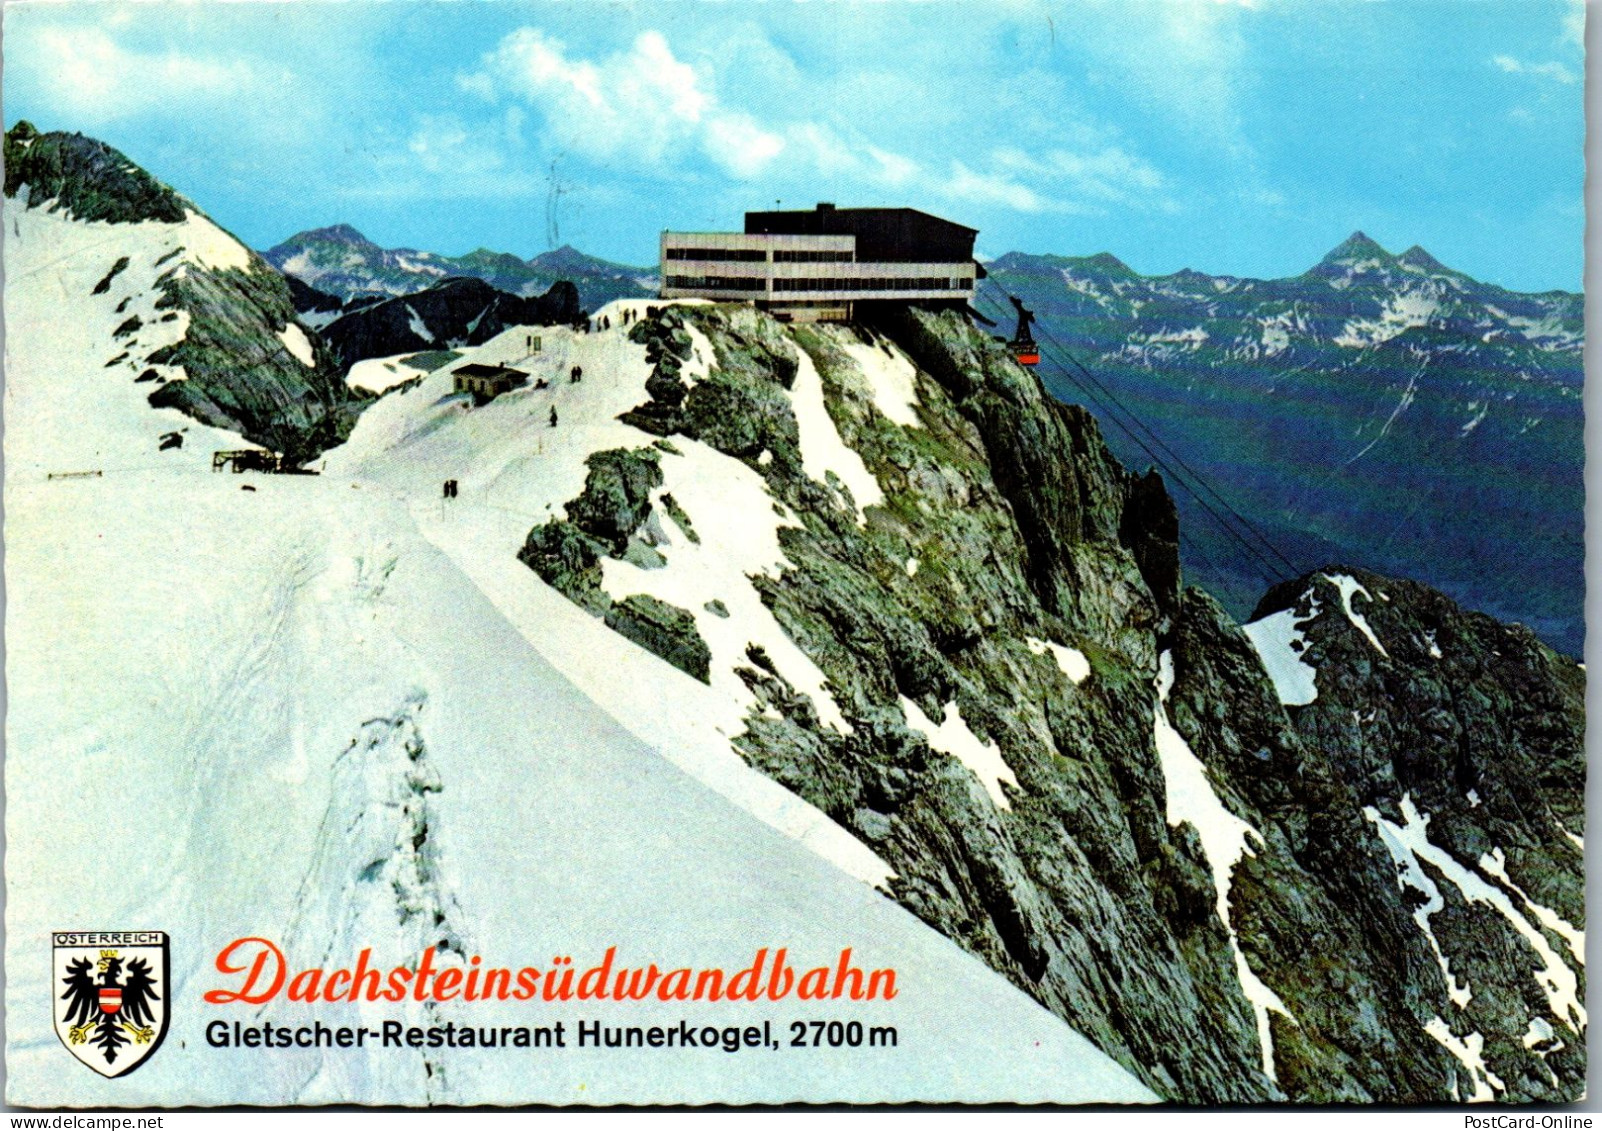 48851 - Steiermark - Ramsau , Bergstation Hunerkogel , Gletscherbahn , Dachsteinsüdwand Bahn - Gelaufen  - Ramsau Am Dachstein